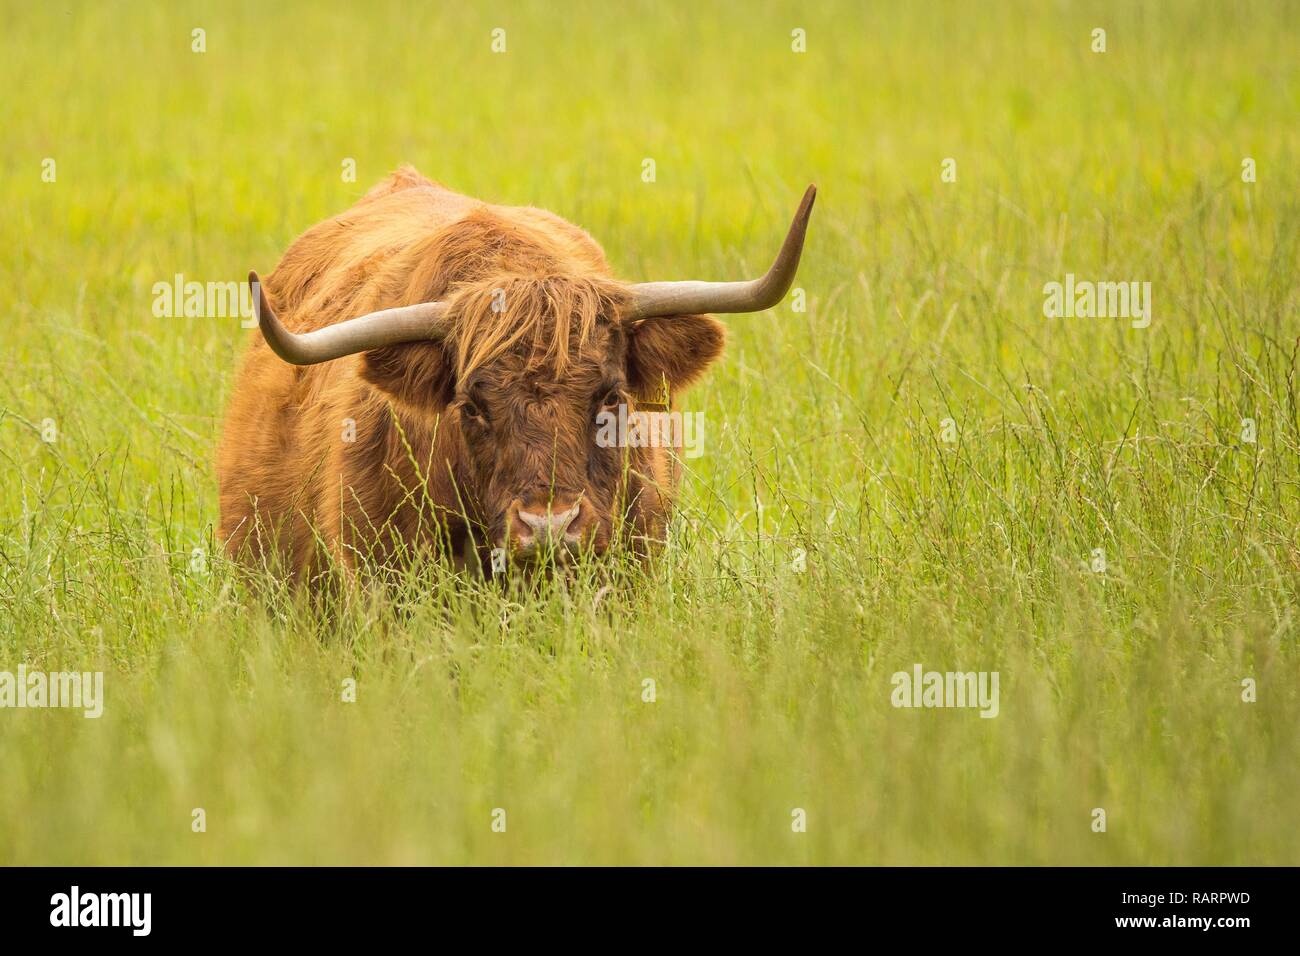 Highland vache dans un champ Banque D'Images